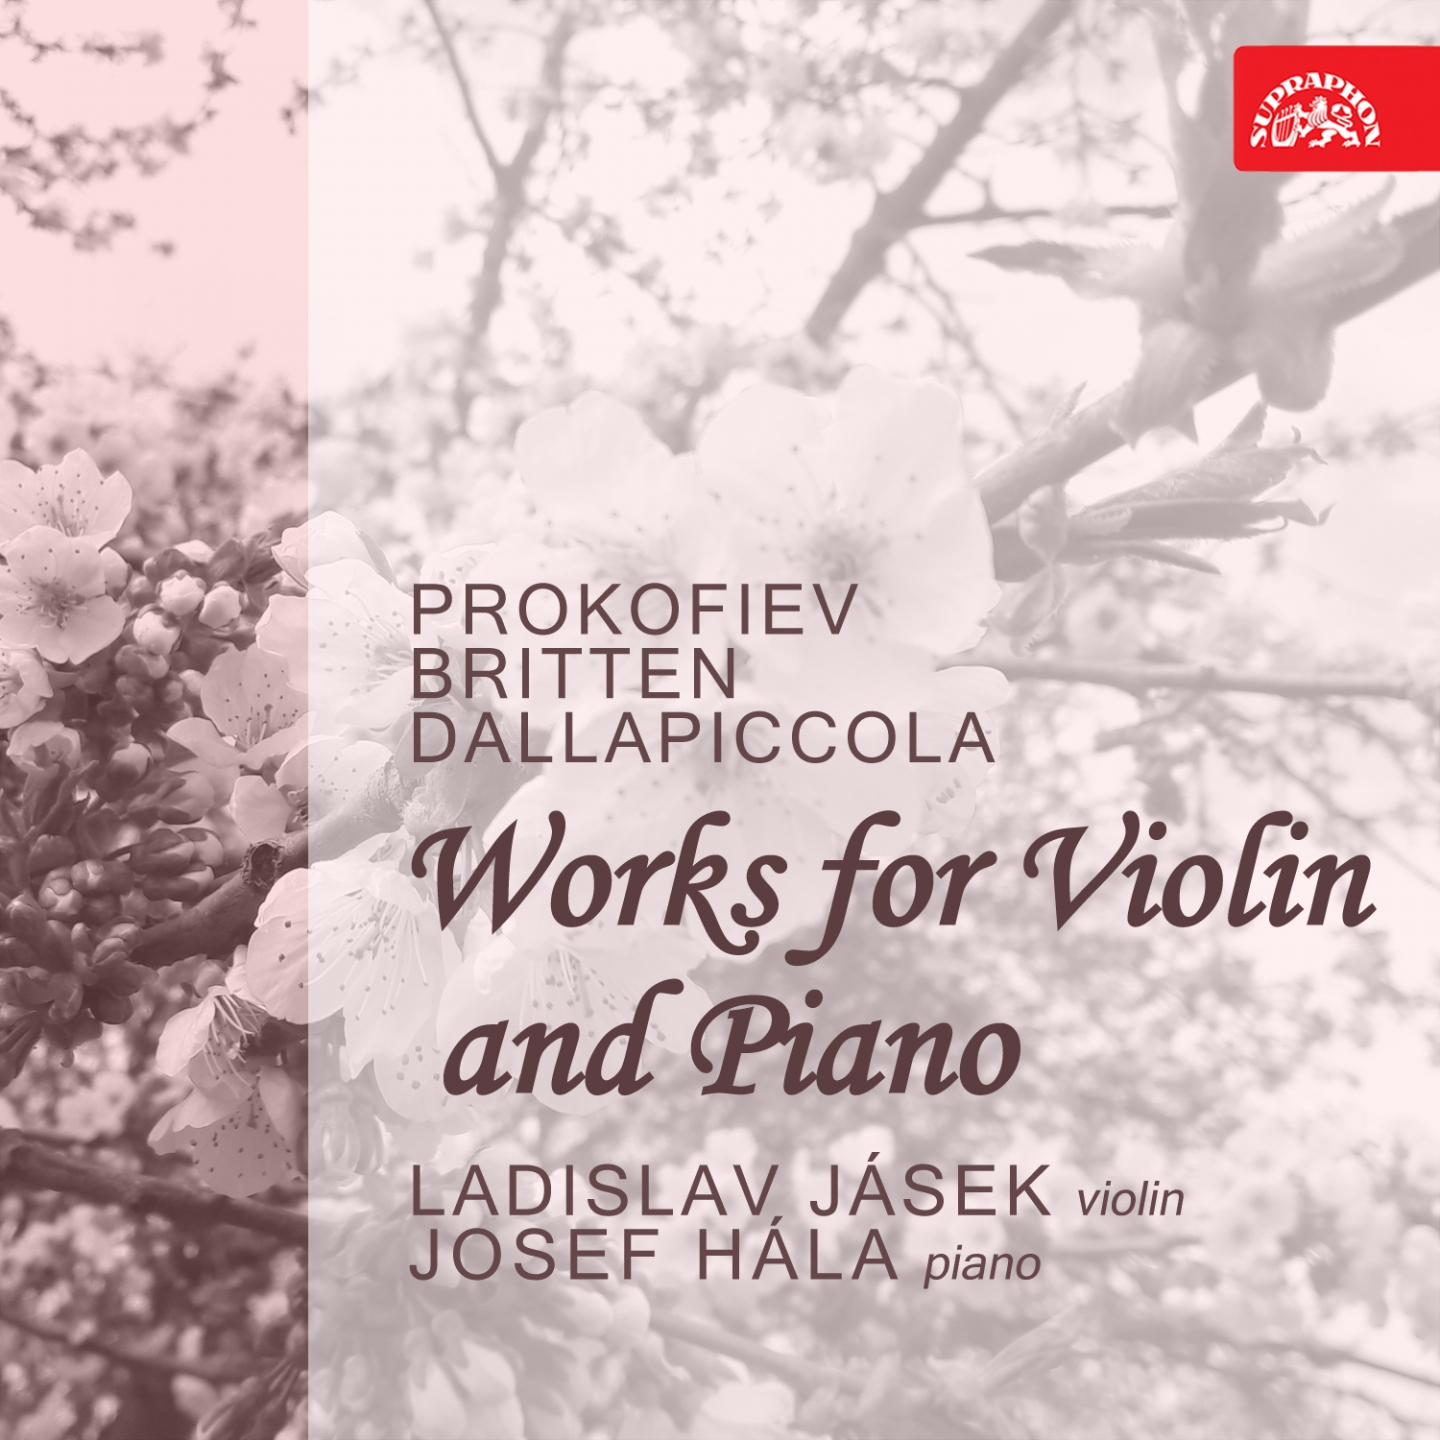 Prokofiev, Britten, Dallapiccola: Works for Violin and Piano